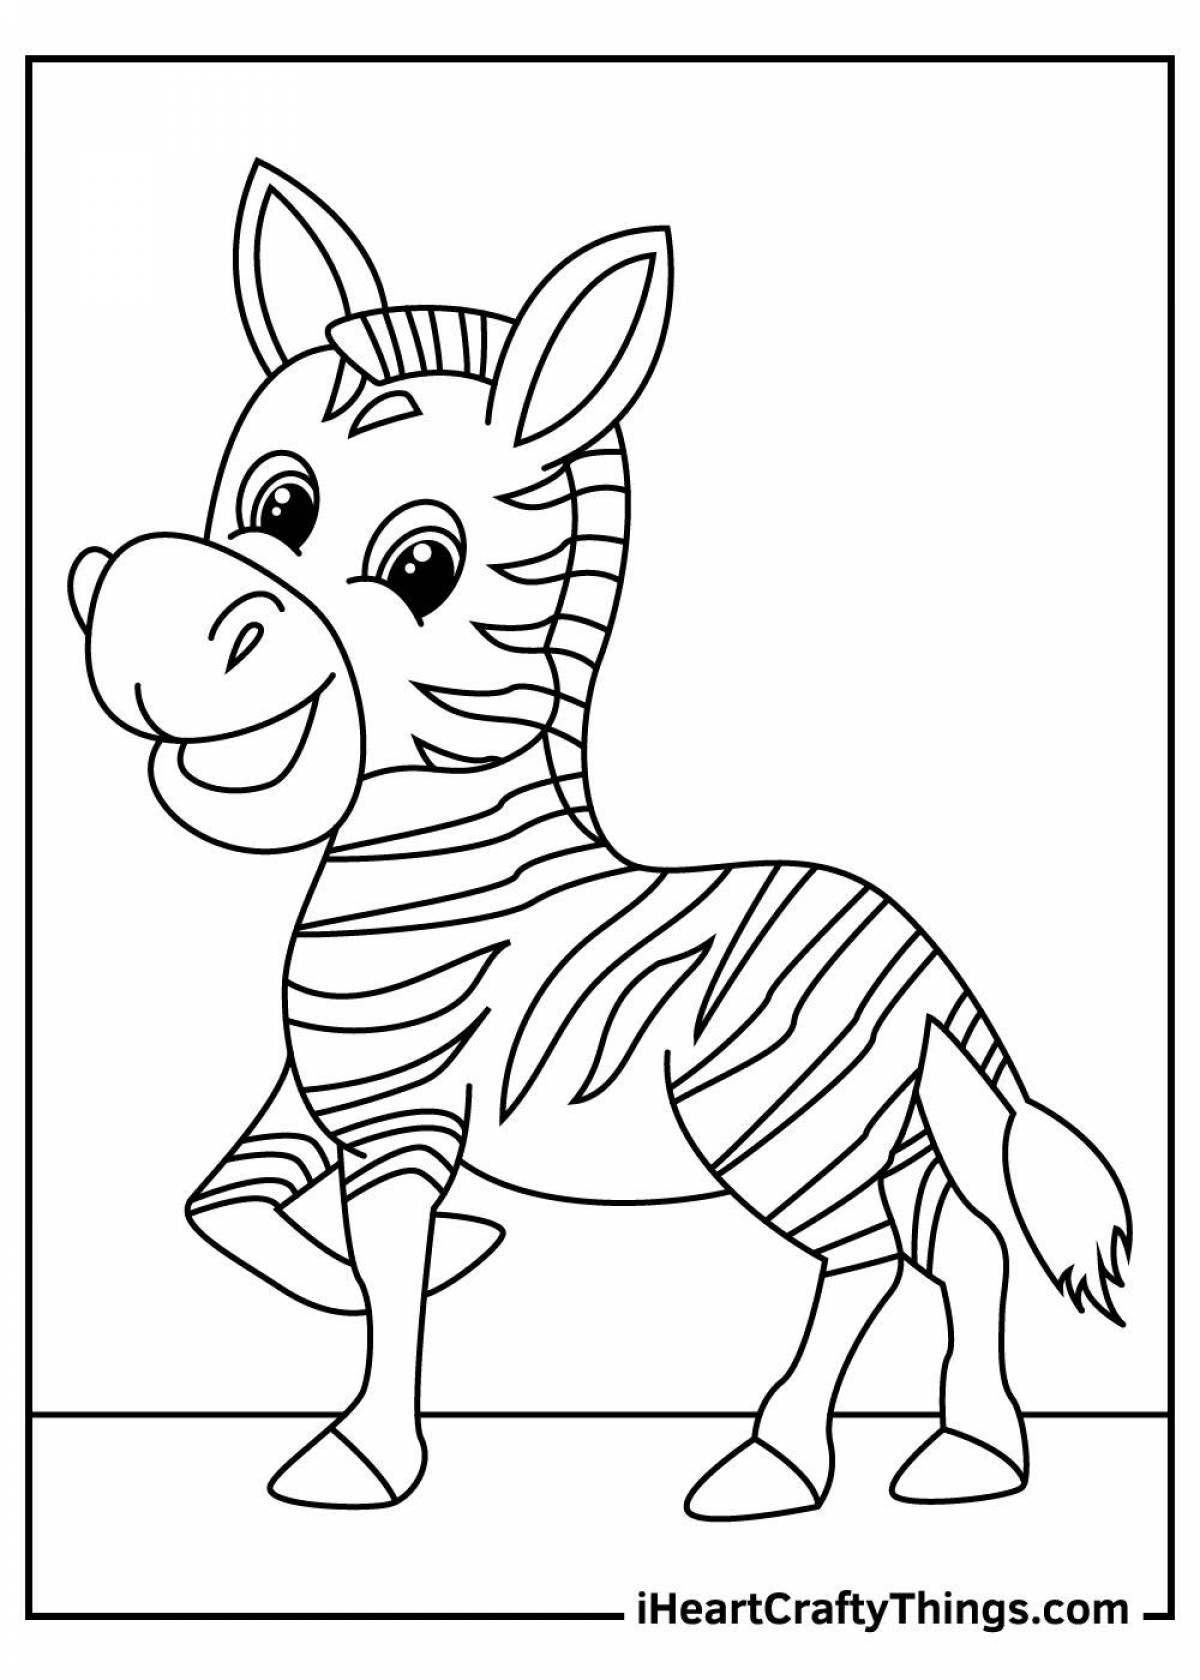 Раскраски зебра с сумасшедшей раскраской для детей